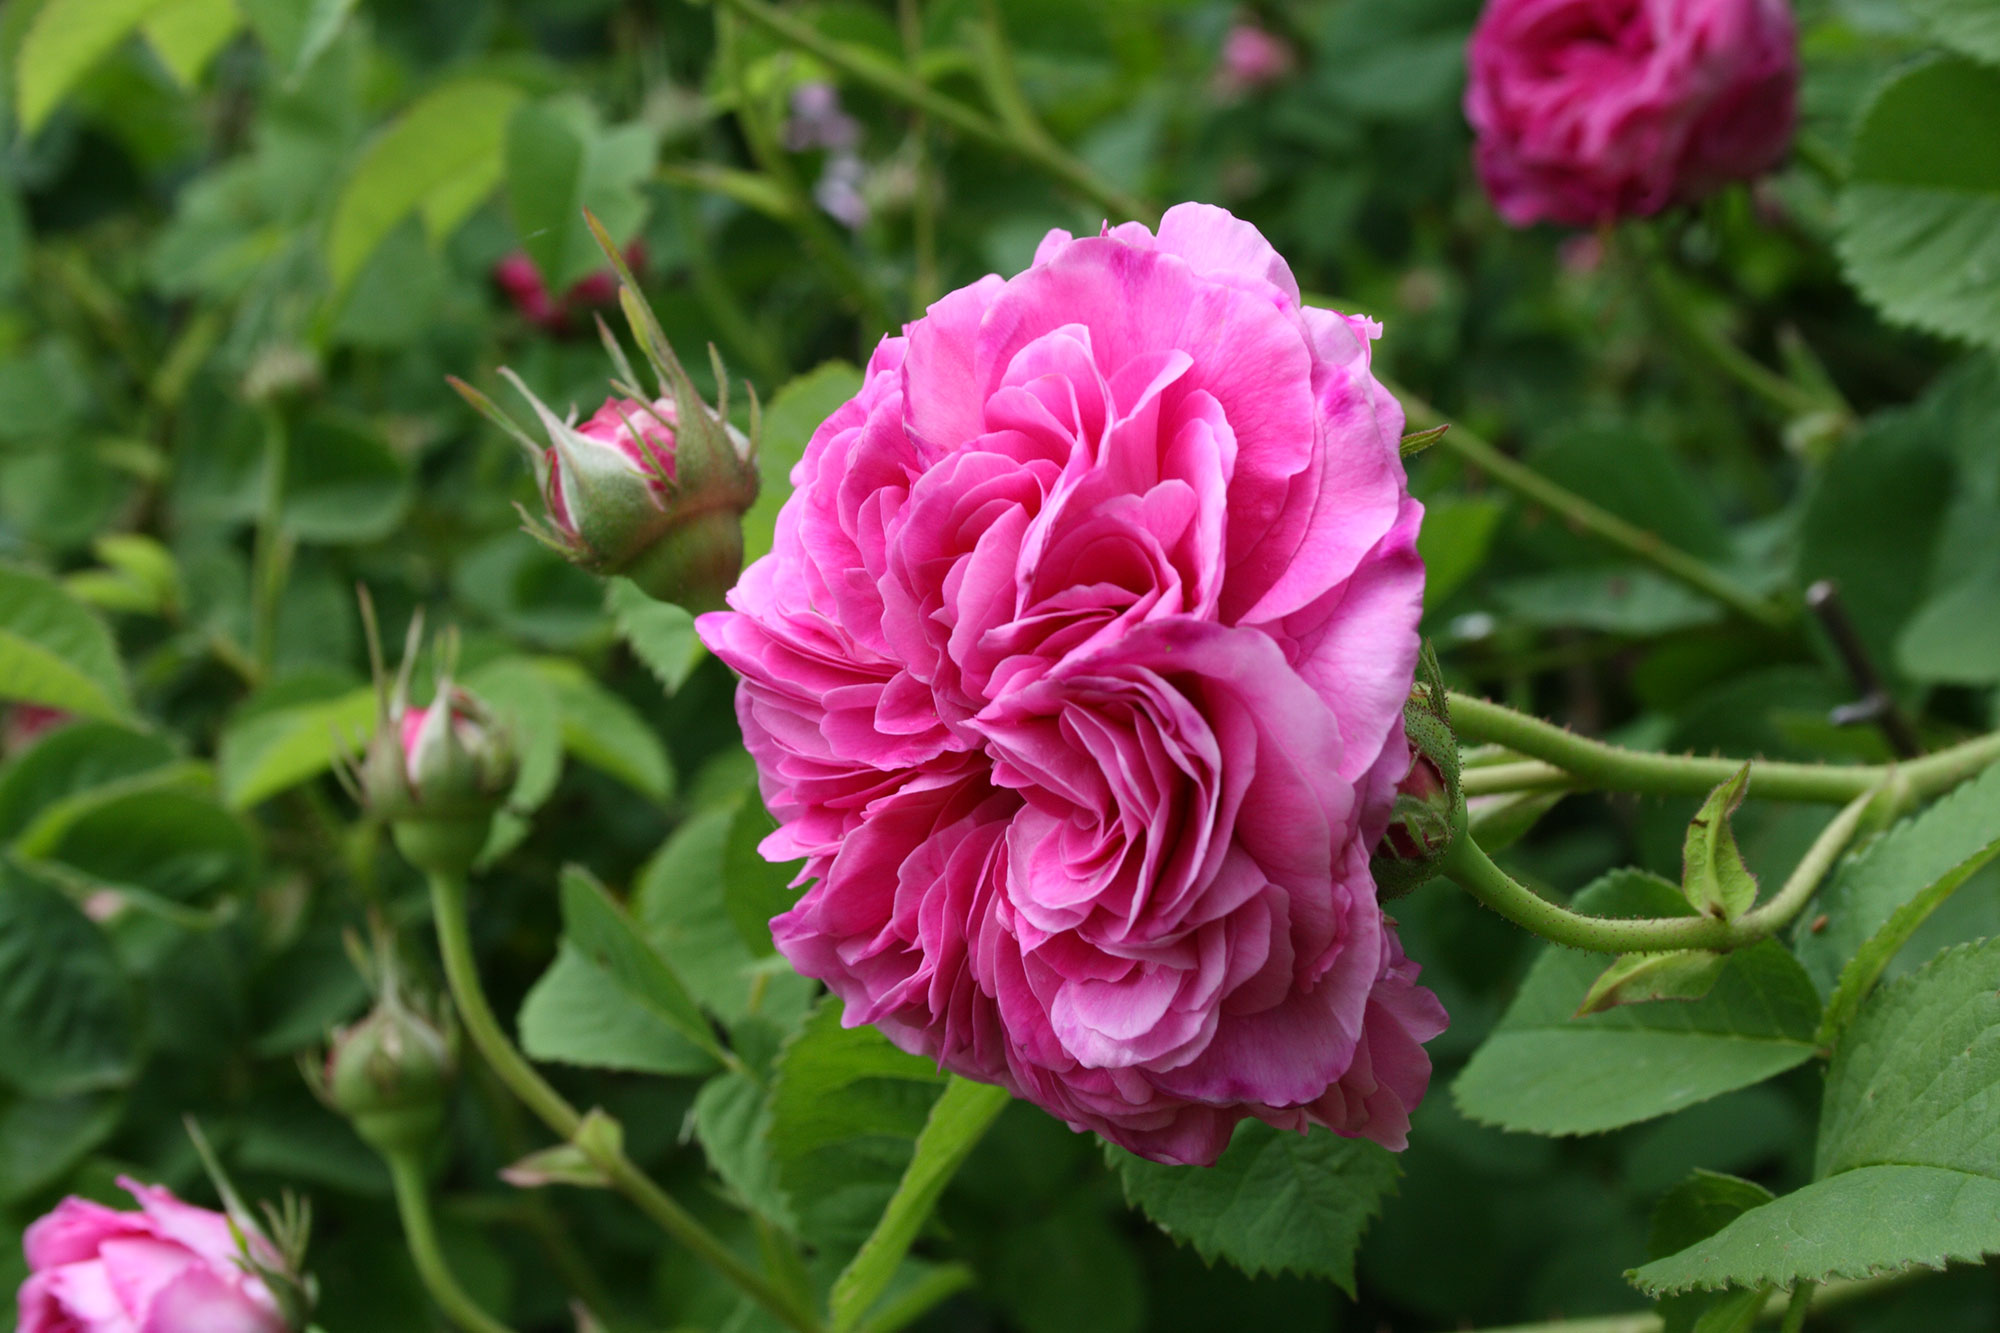 The Rose Of Magliano Rosa Di Magliano